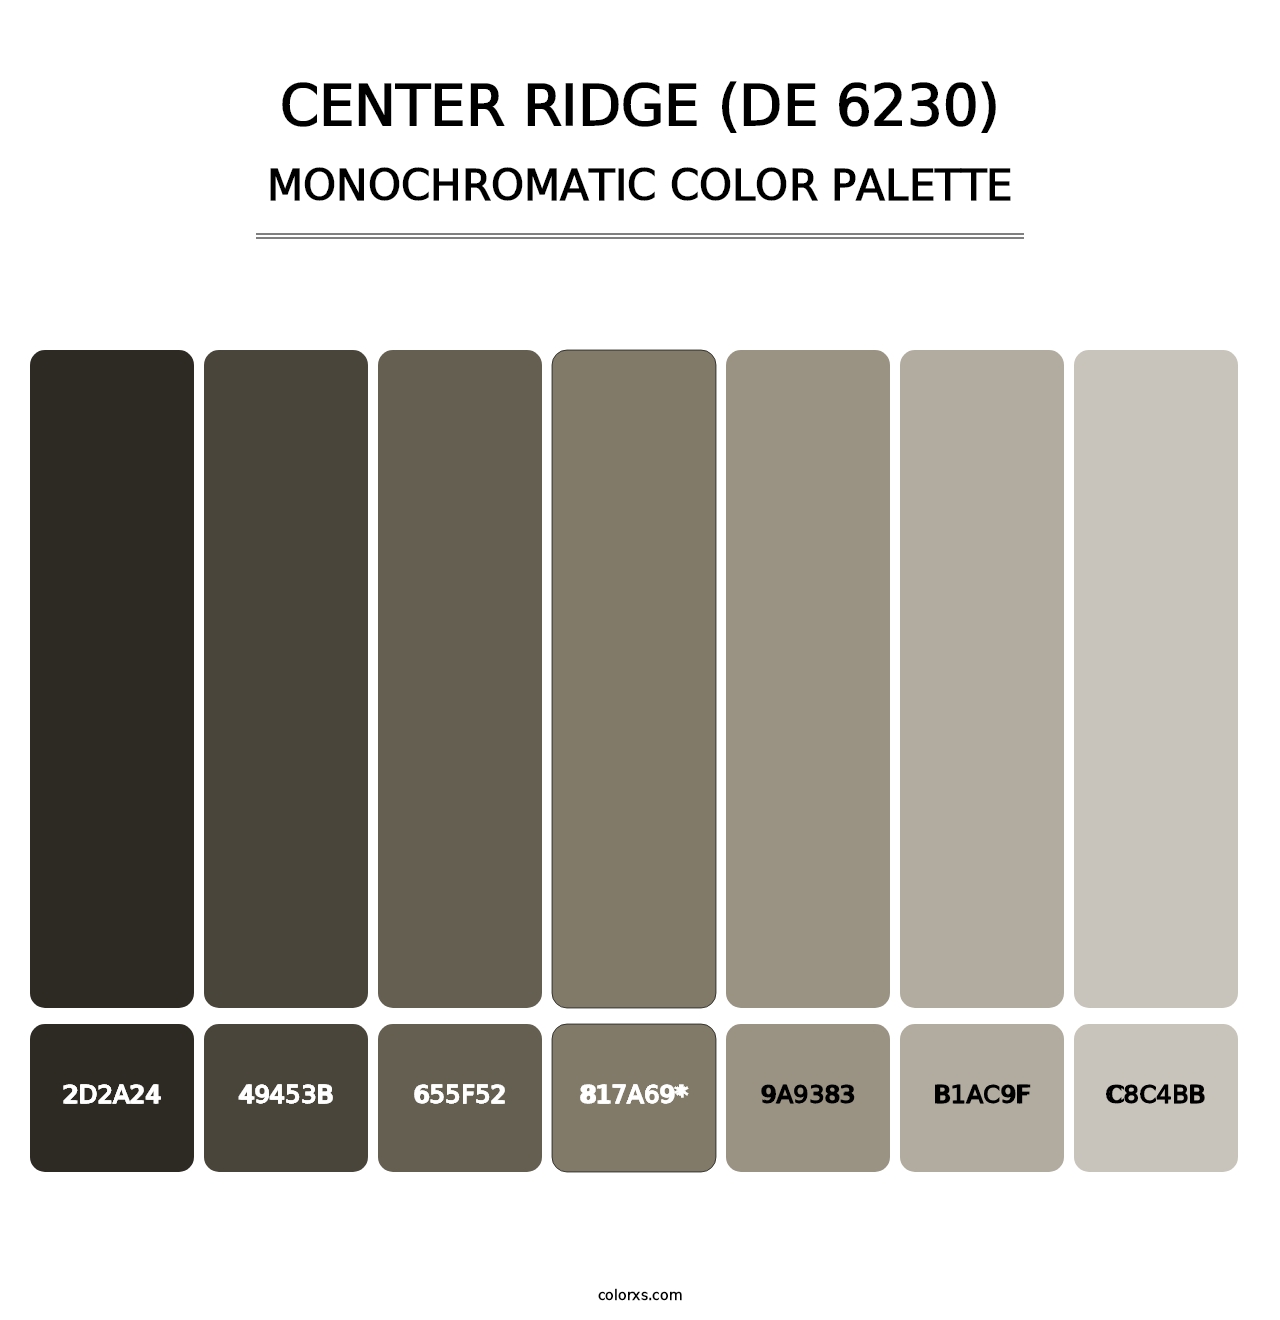 Center Ridge (DE 6230) - Monochromatic Color Palette